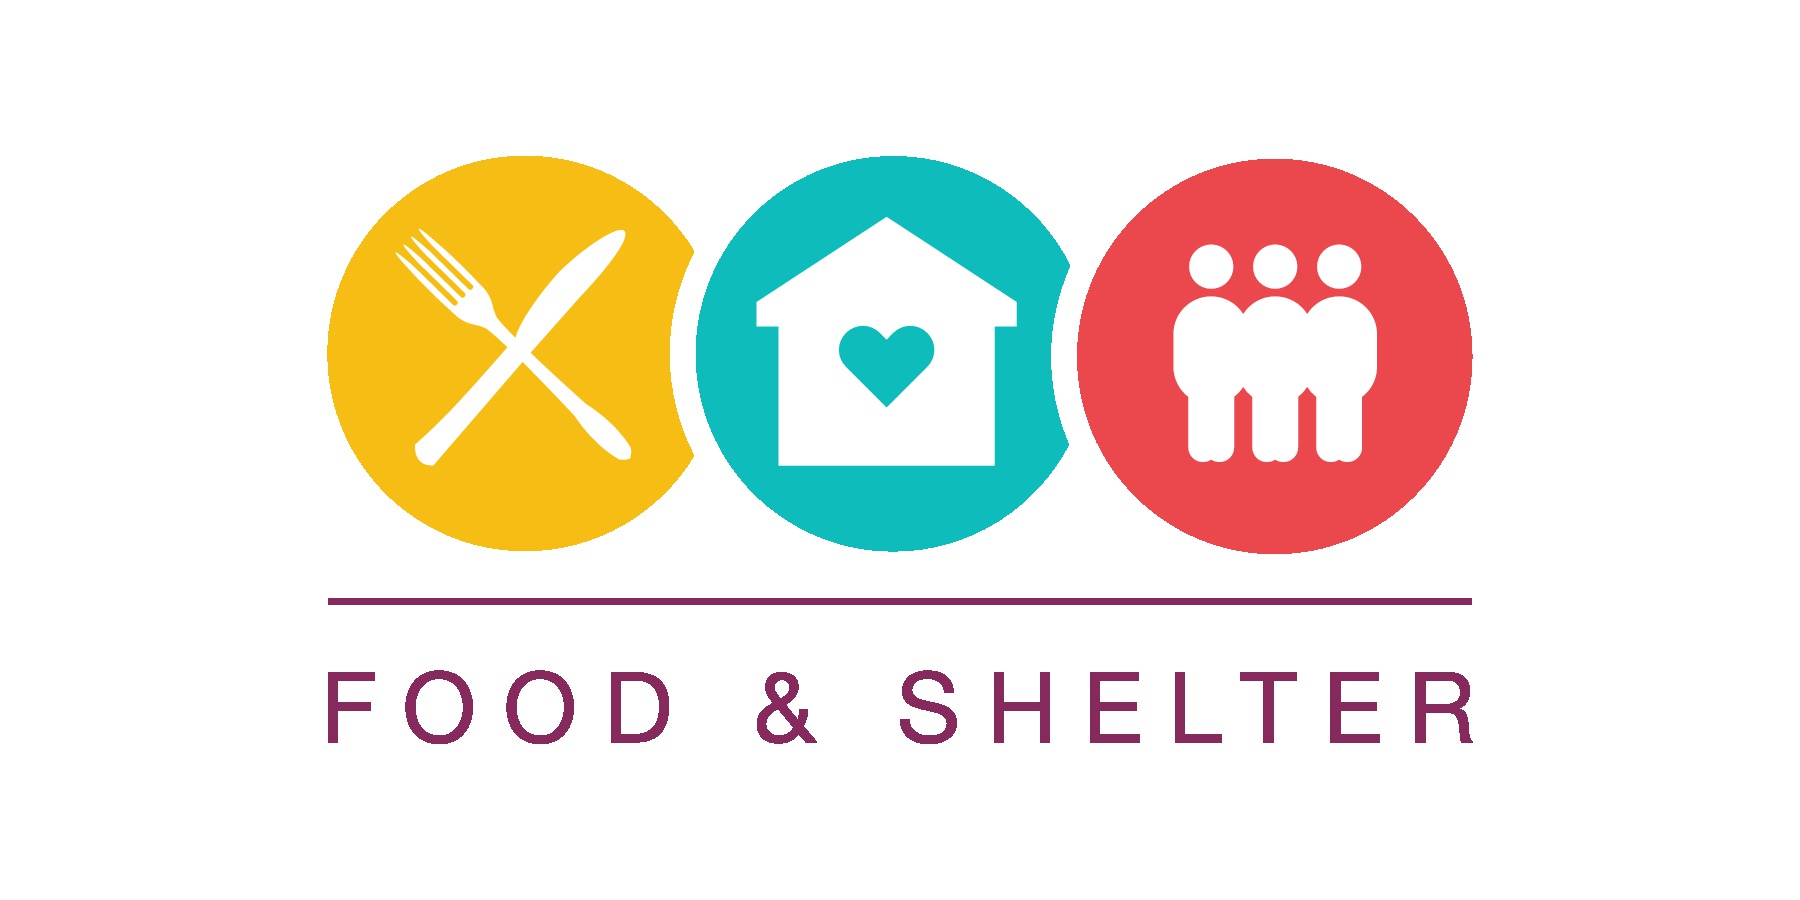 Food & Shelter